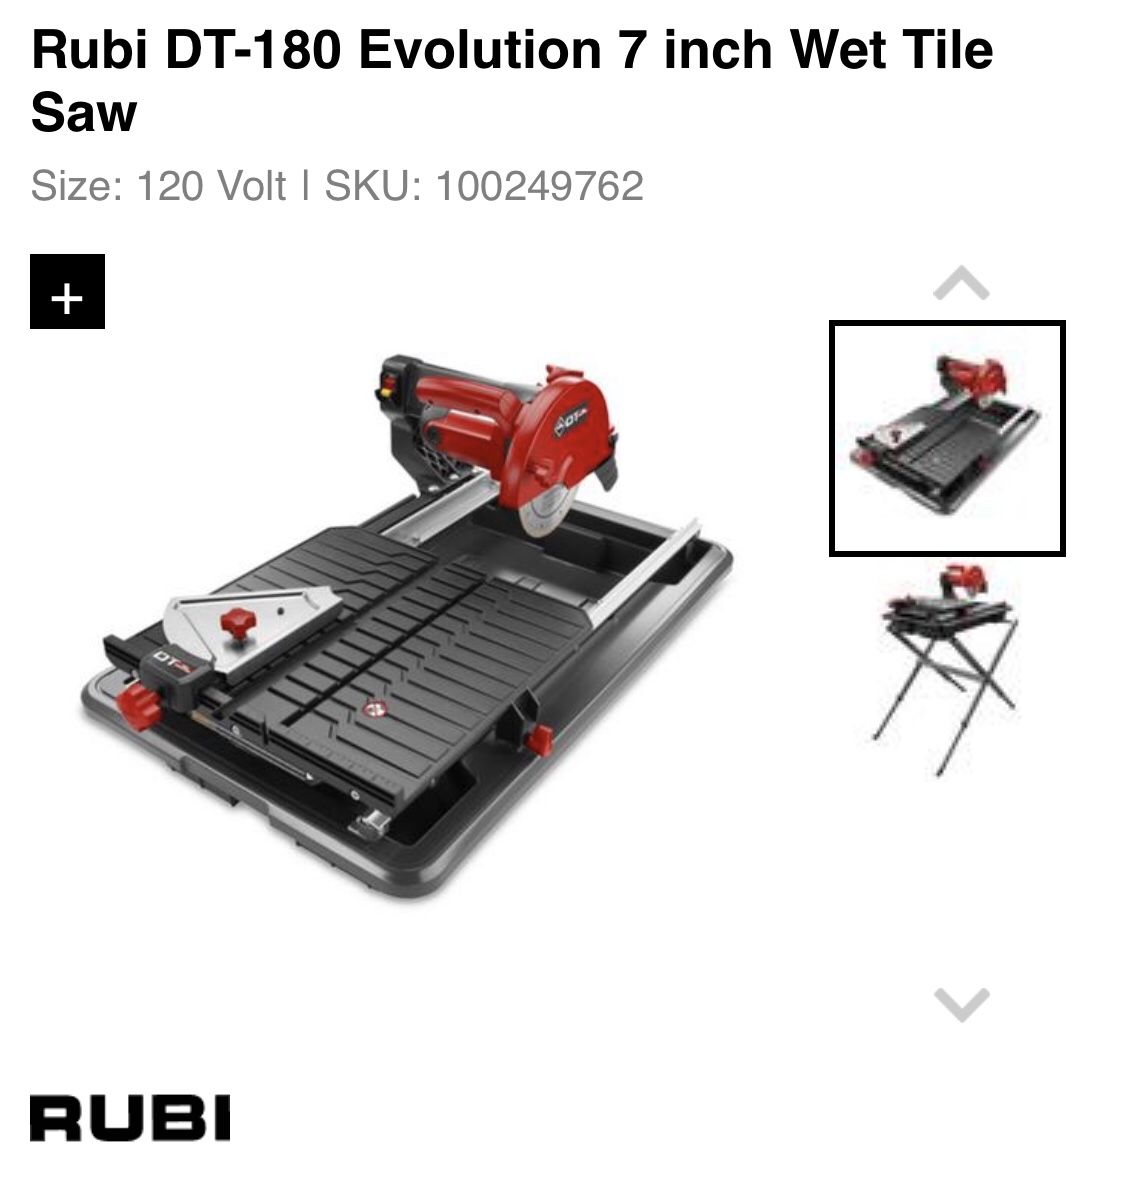 Rubi DT-180 - 7 inch Wet Tile Saw